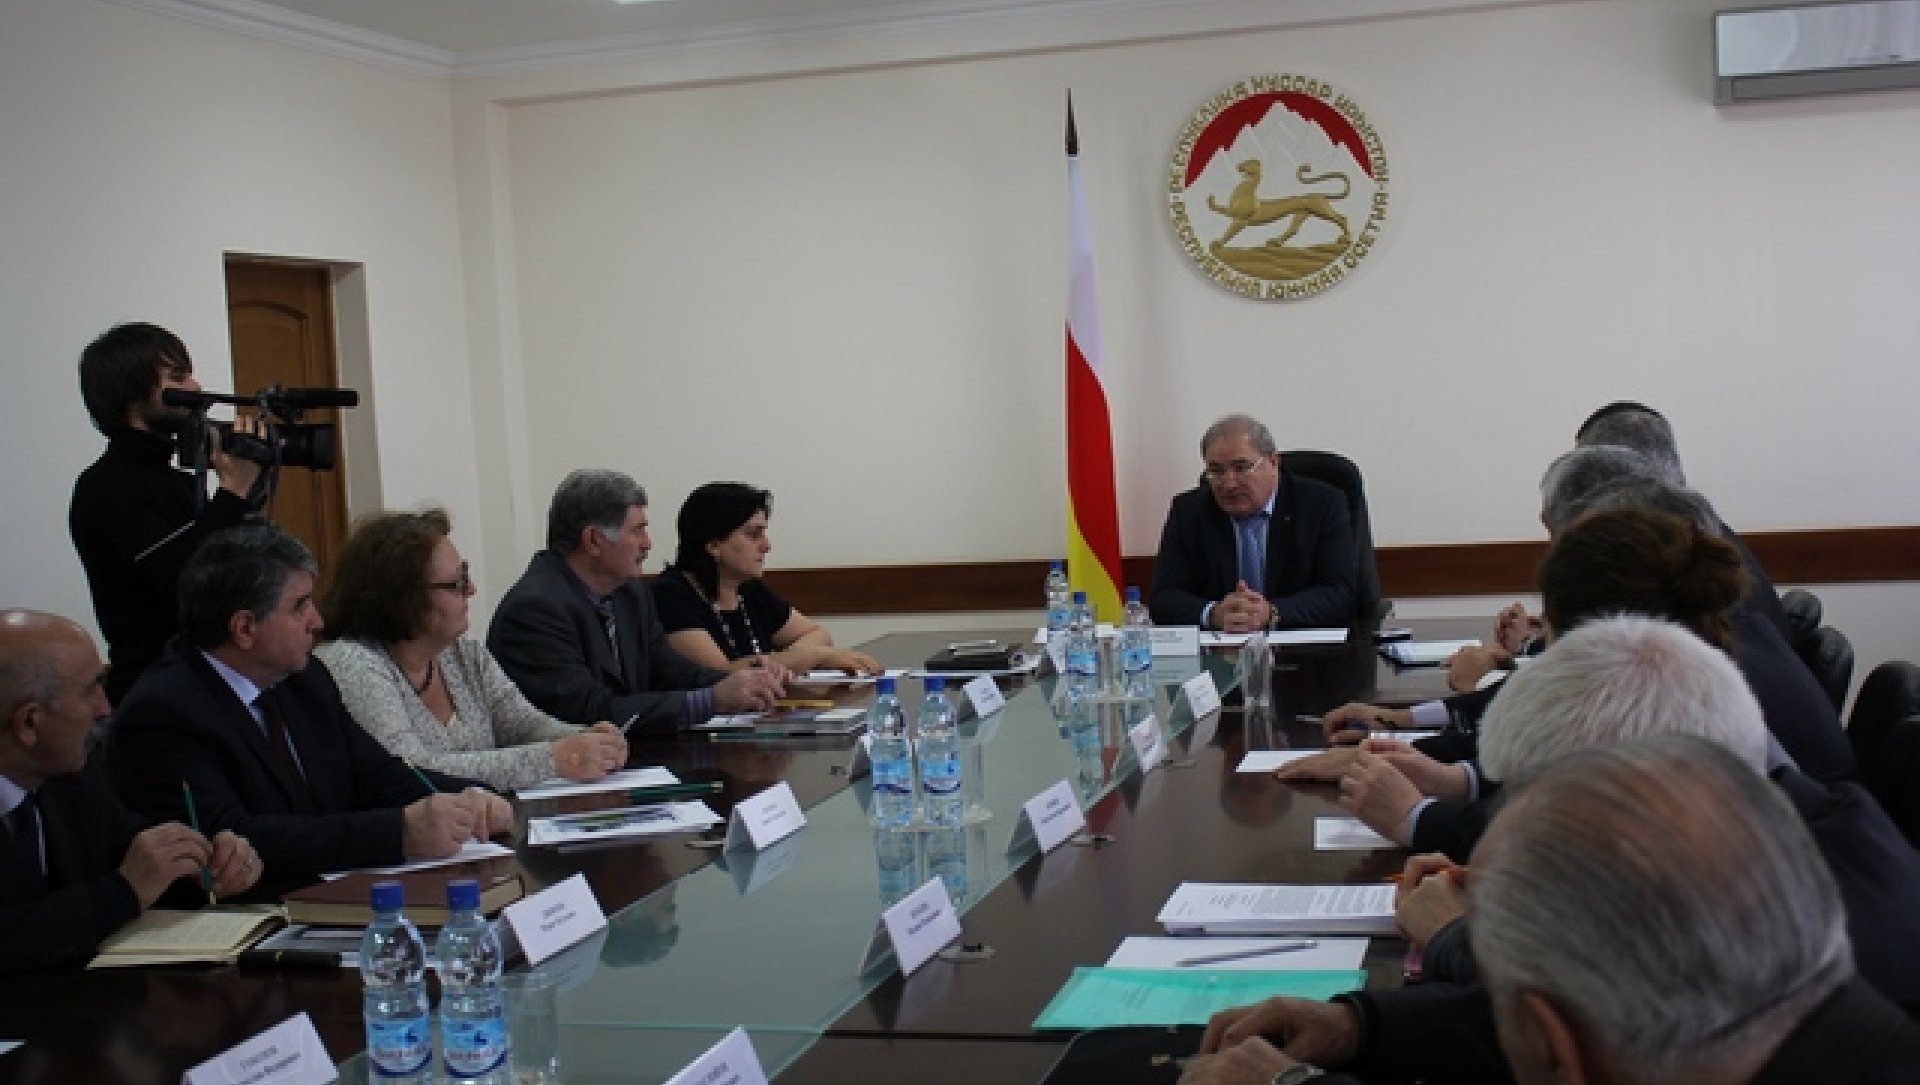 В Правительстве состоялось обсуждение по вопросу изменения названия Республики Южная Осетия